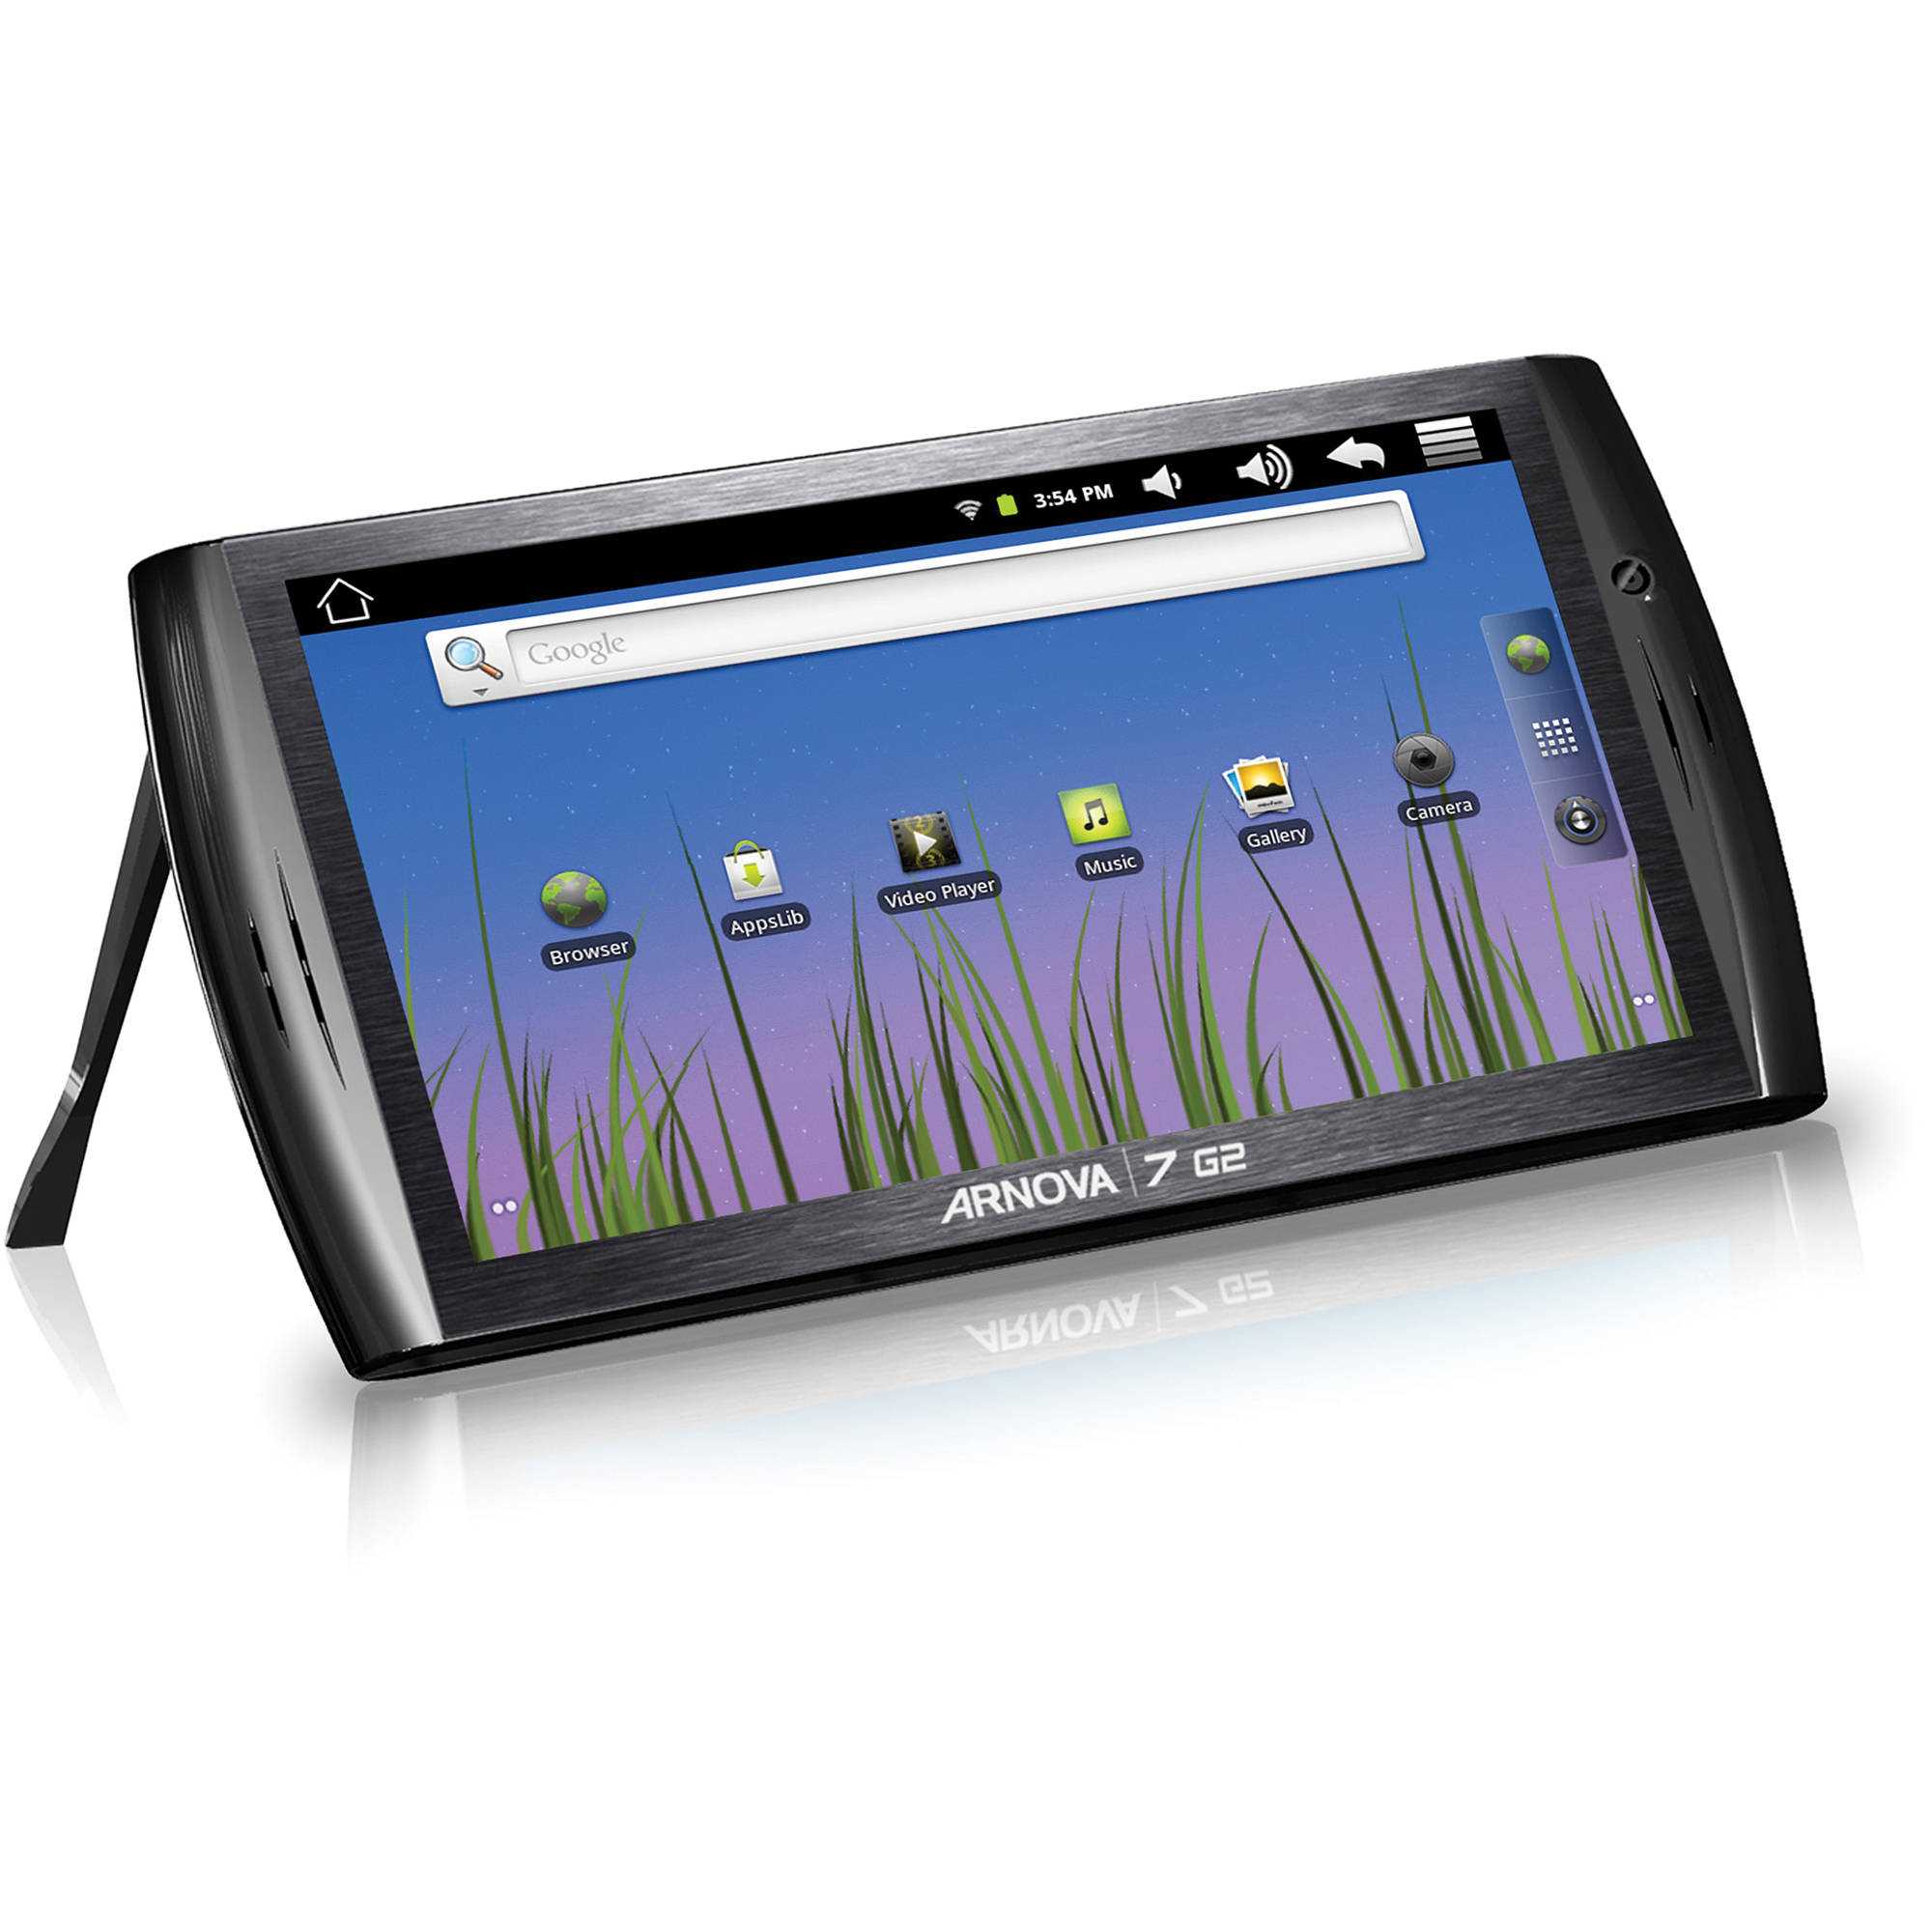 Замена экрана планшета archos arnova 10 g2 — купить, цена и характеристики, отзывы